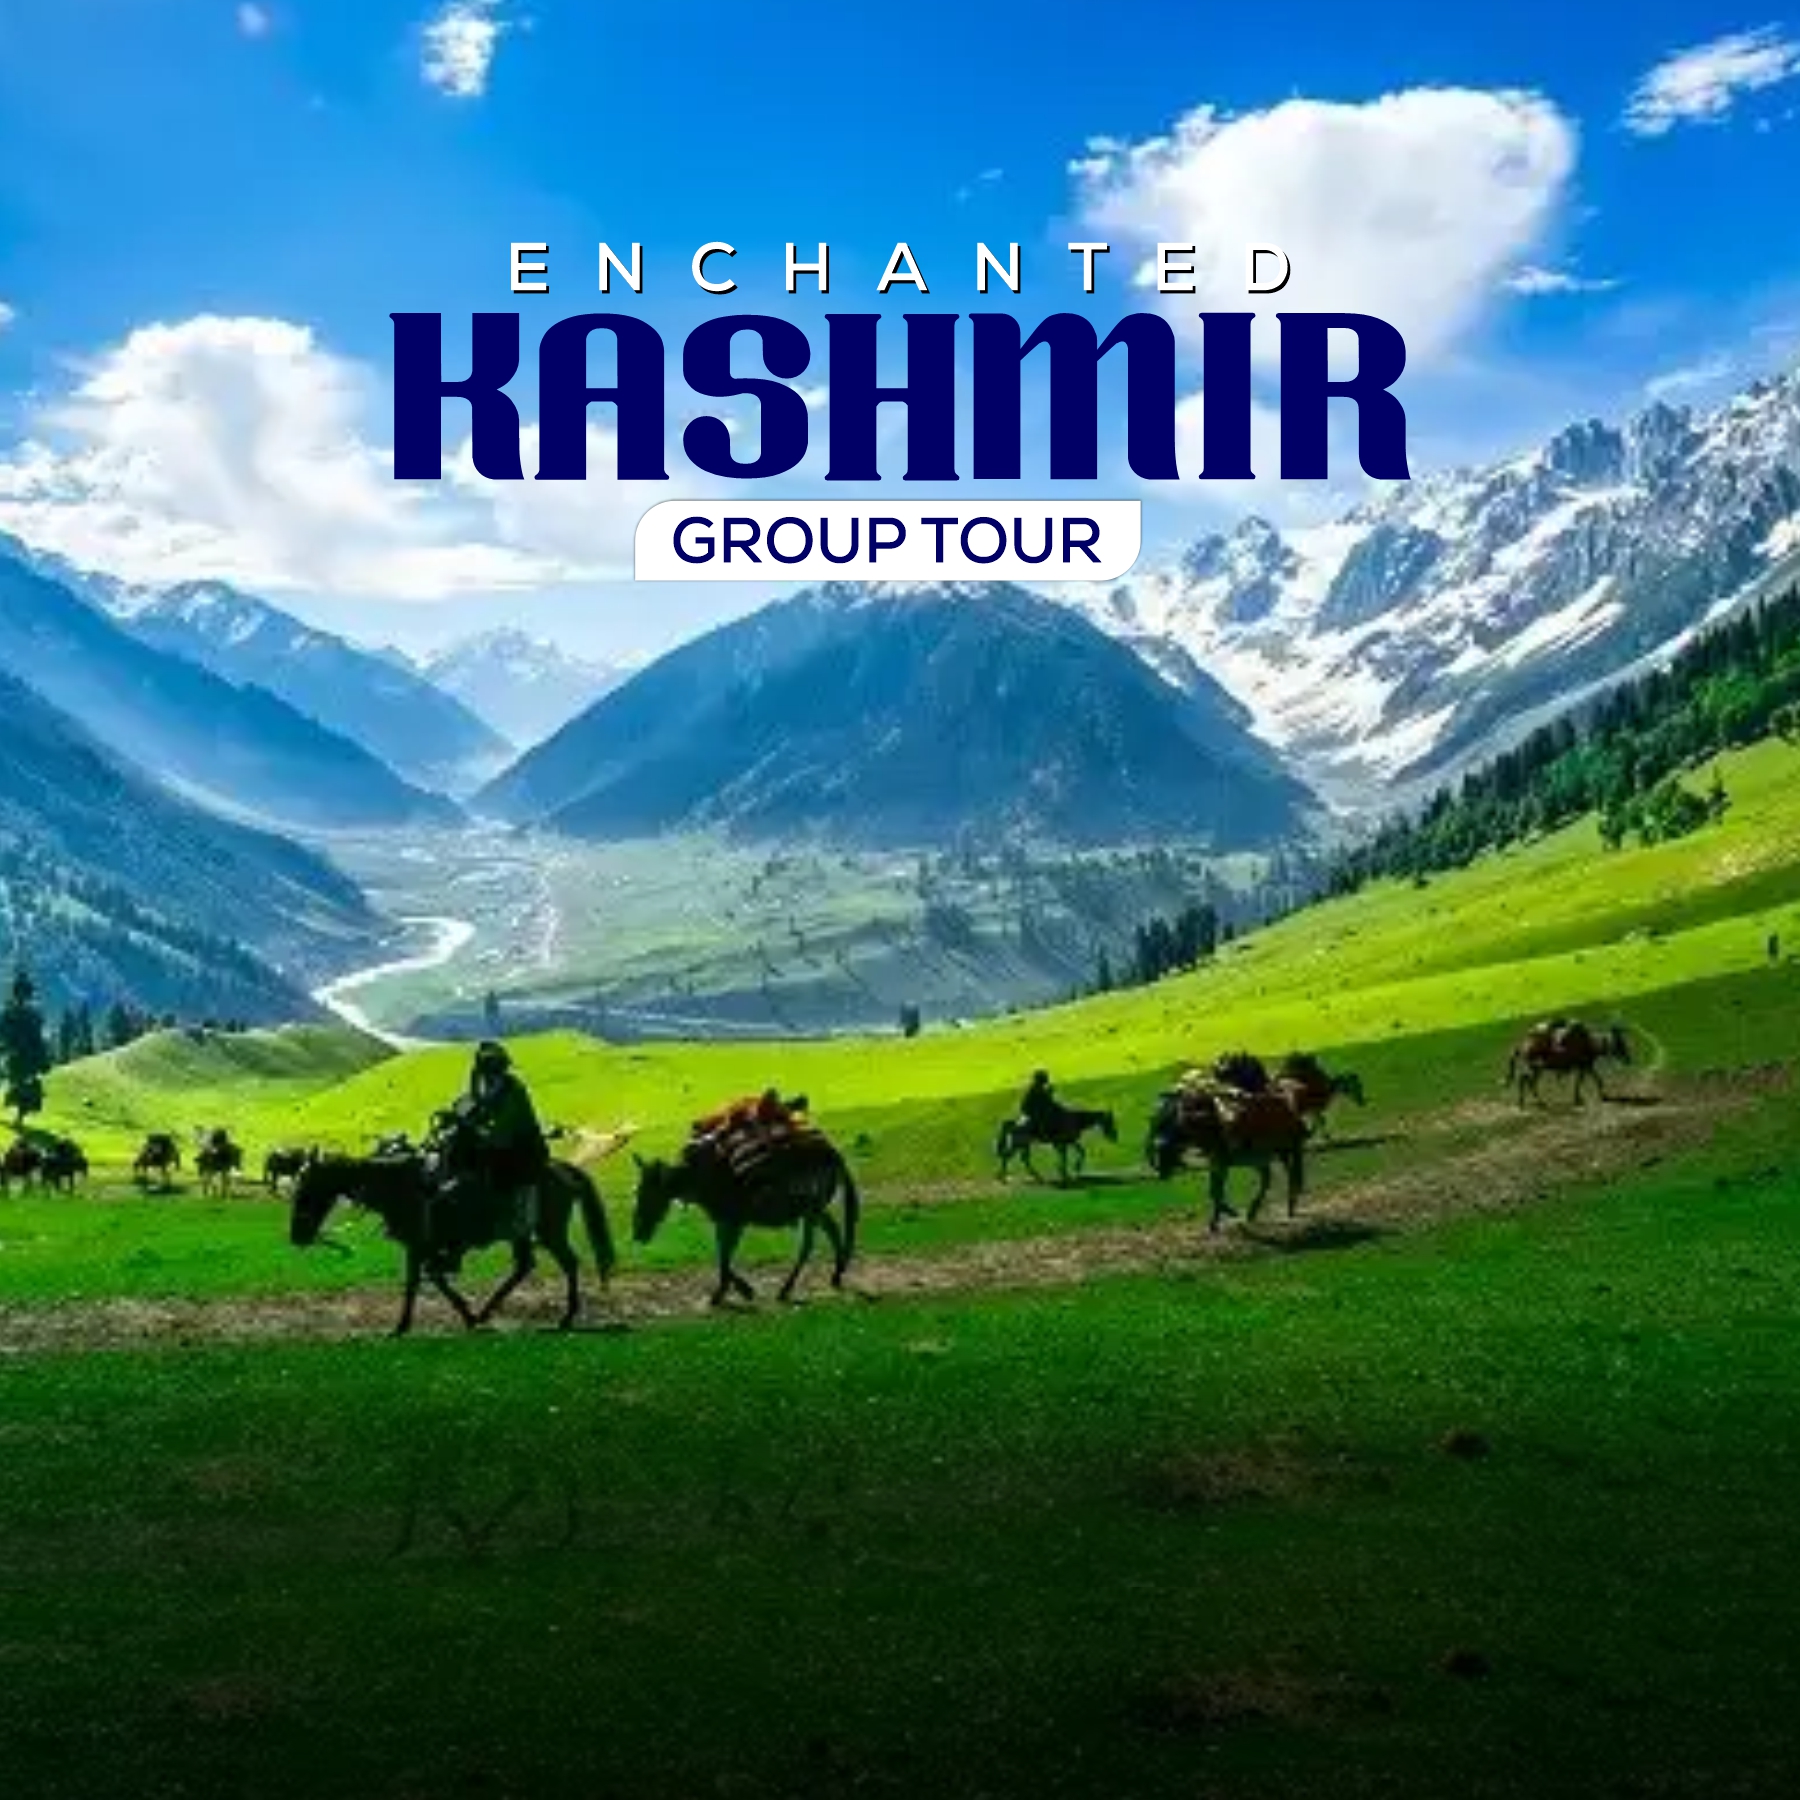 Enchanted Kashmir Tour (7th June), Srinagar, Jammu and Kashmir, India